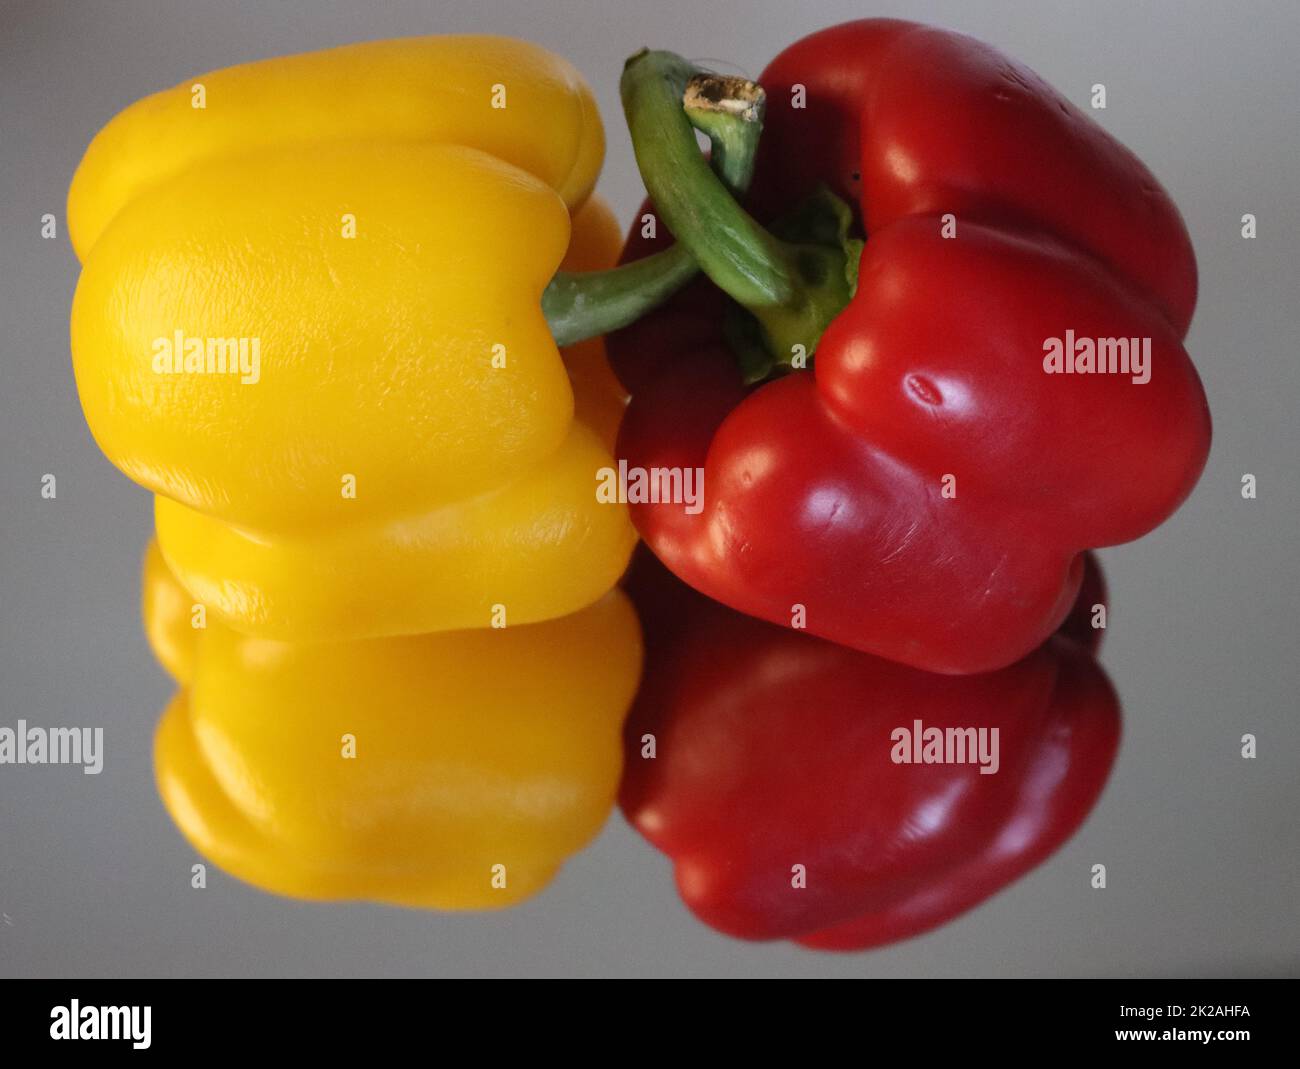 peperoni deliziosi di colori brillanti aroma naturale equilibrio diverso Foto Stock